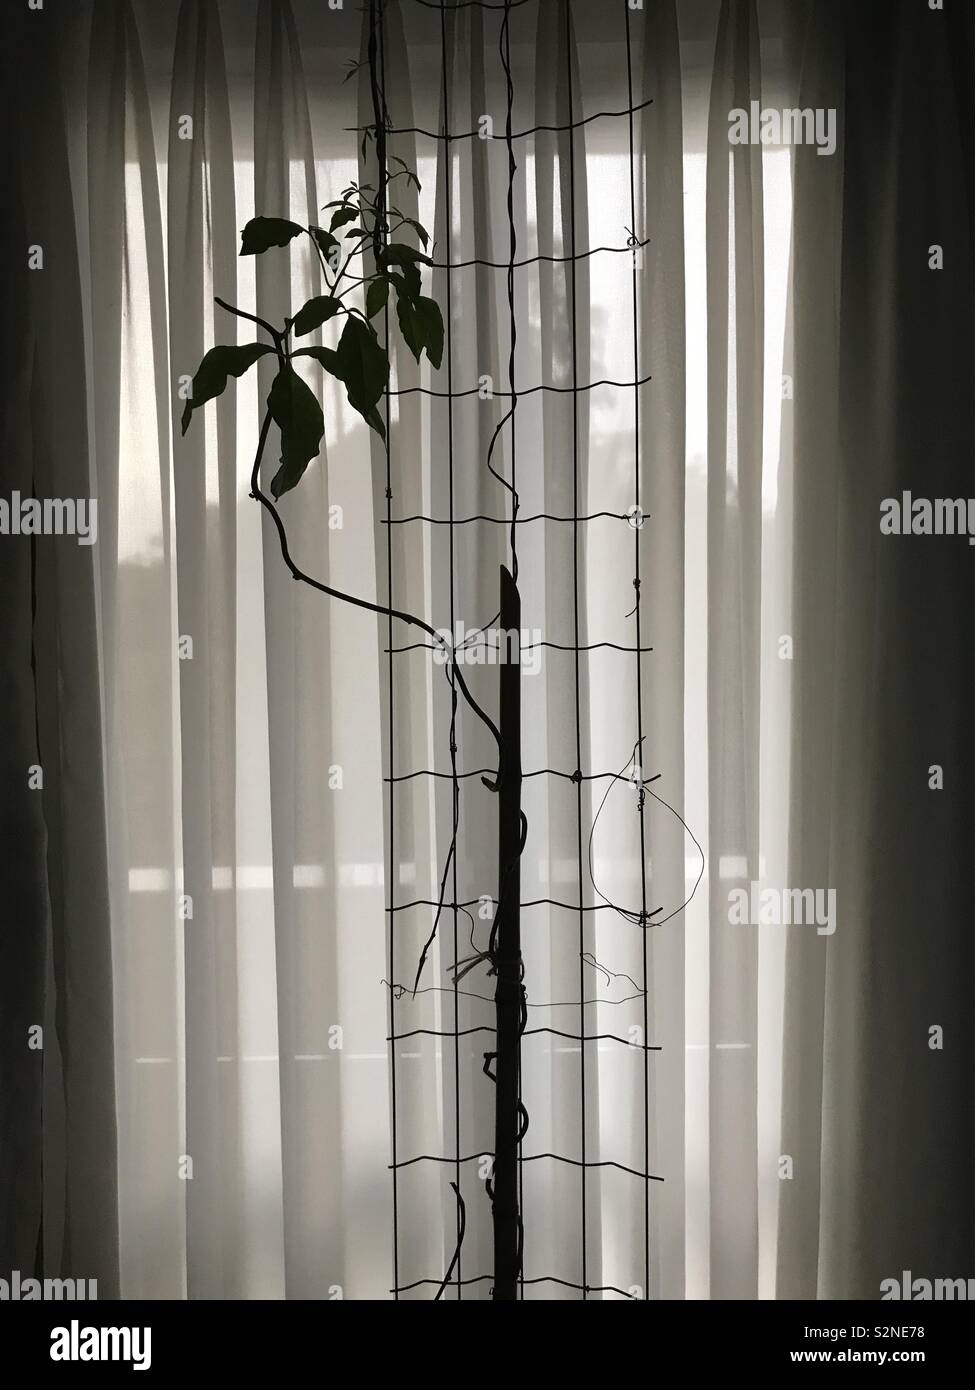 Passion fruit tree, avec une semi rideau translucide à l'arrière-plan Banque D'Images